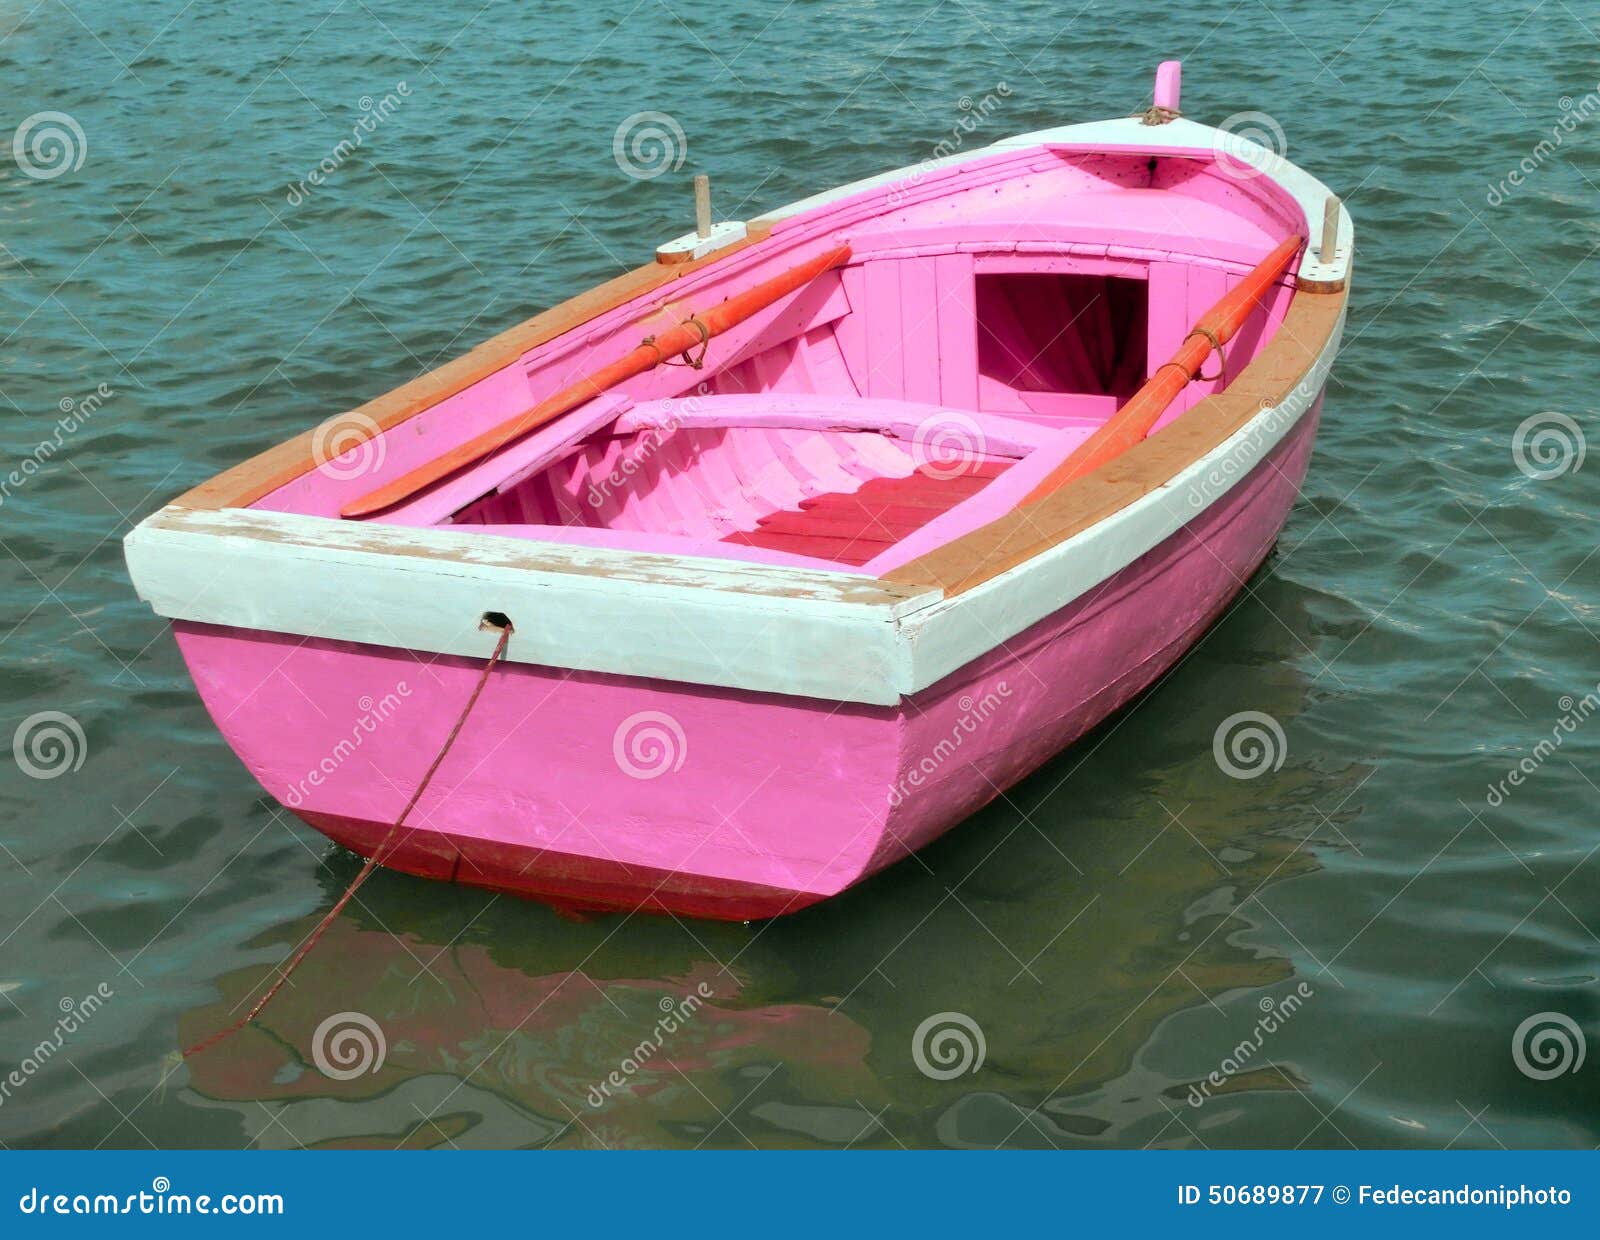 hersenen etiquette stilte Roze Boot in Het Midden Van De Oceaan Stock Afbeelding - Image of visserij,  isoleer: 50689877